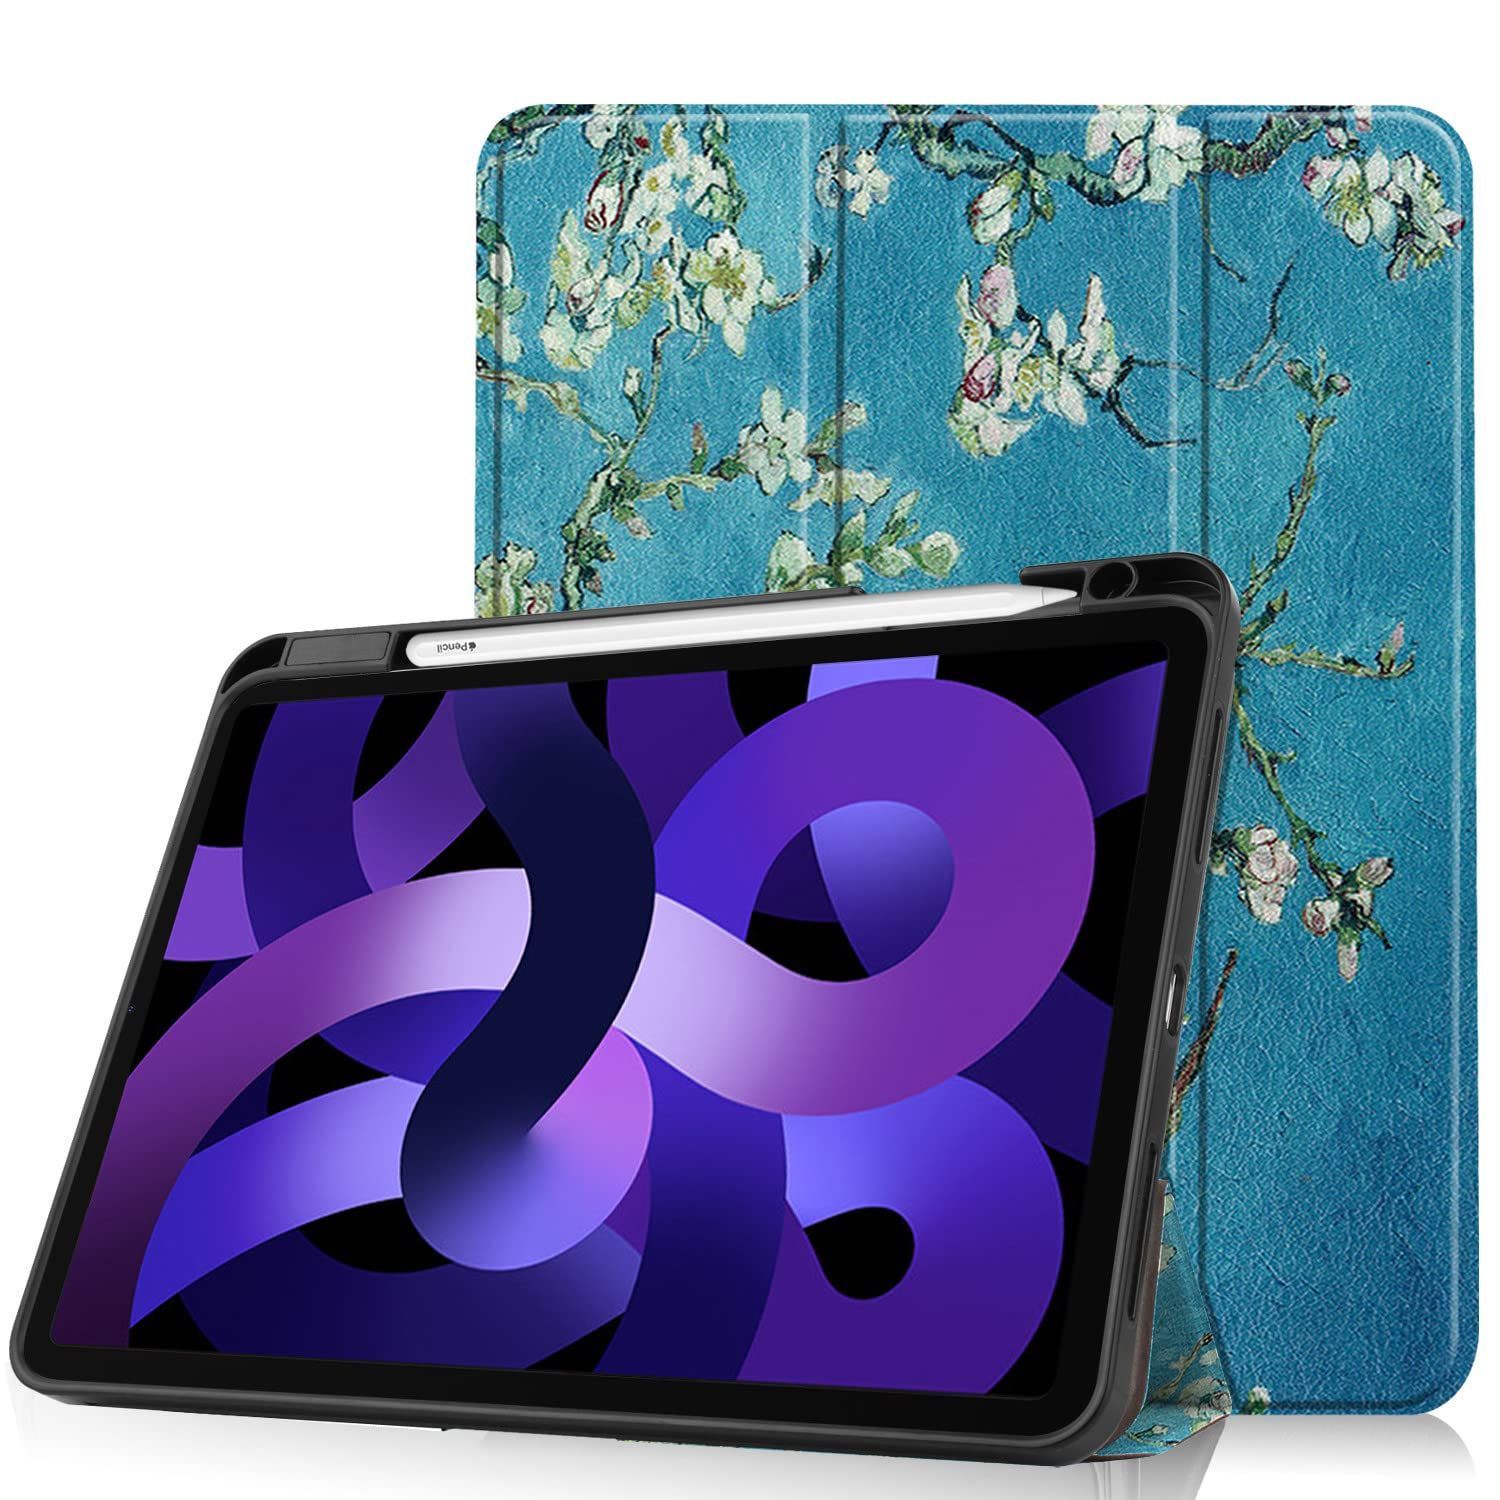 【送料無料/新品】 iPad Air 第5世代 Air4 pple Penci